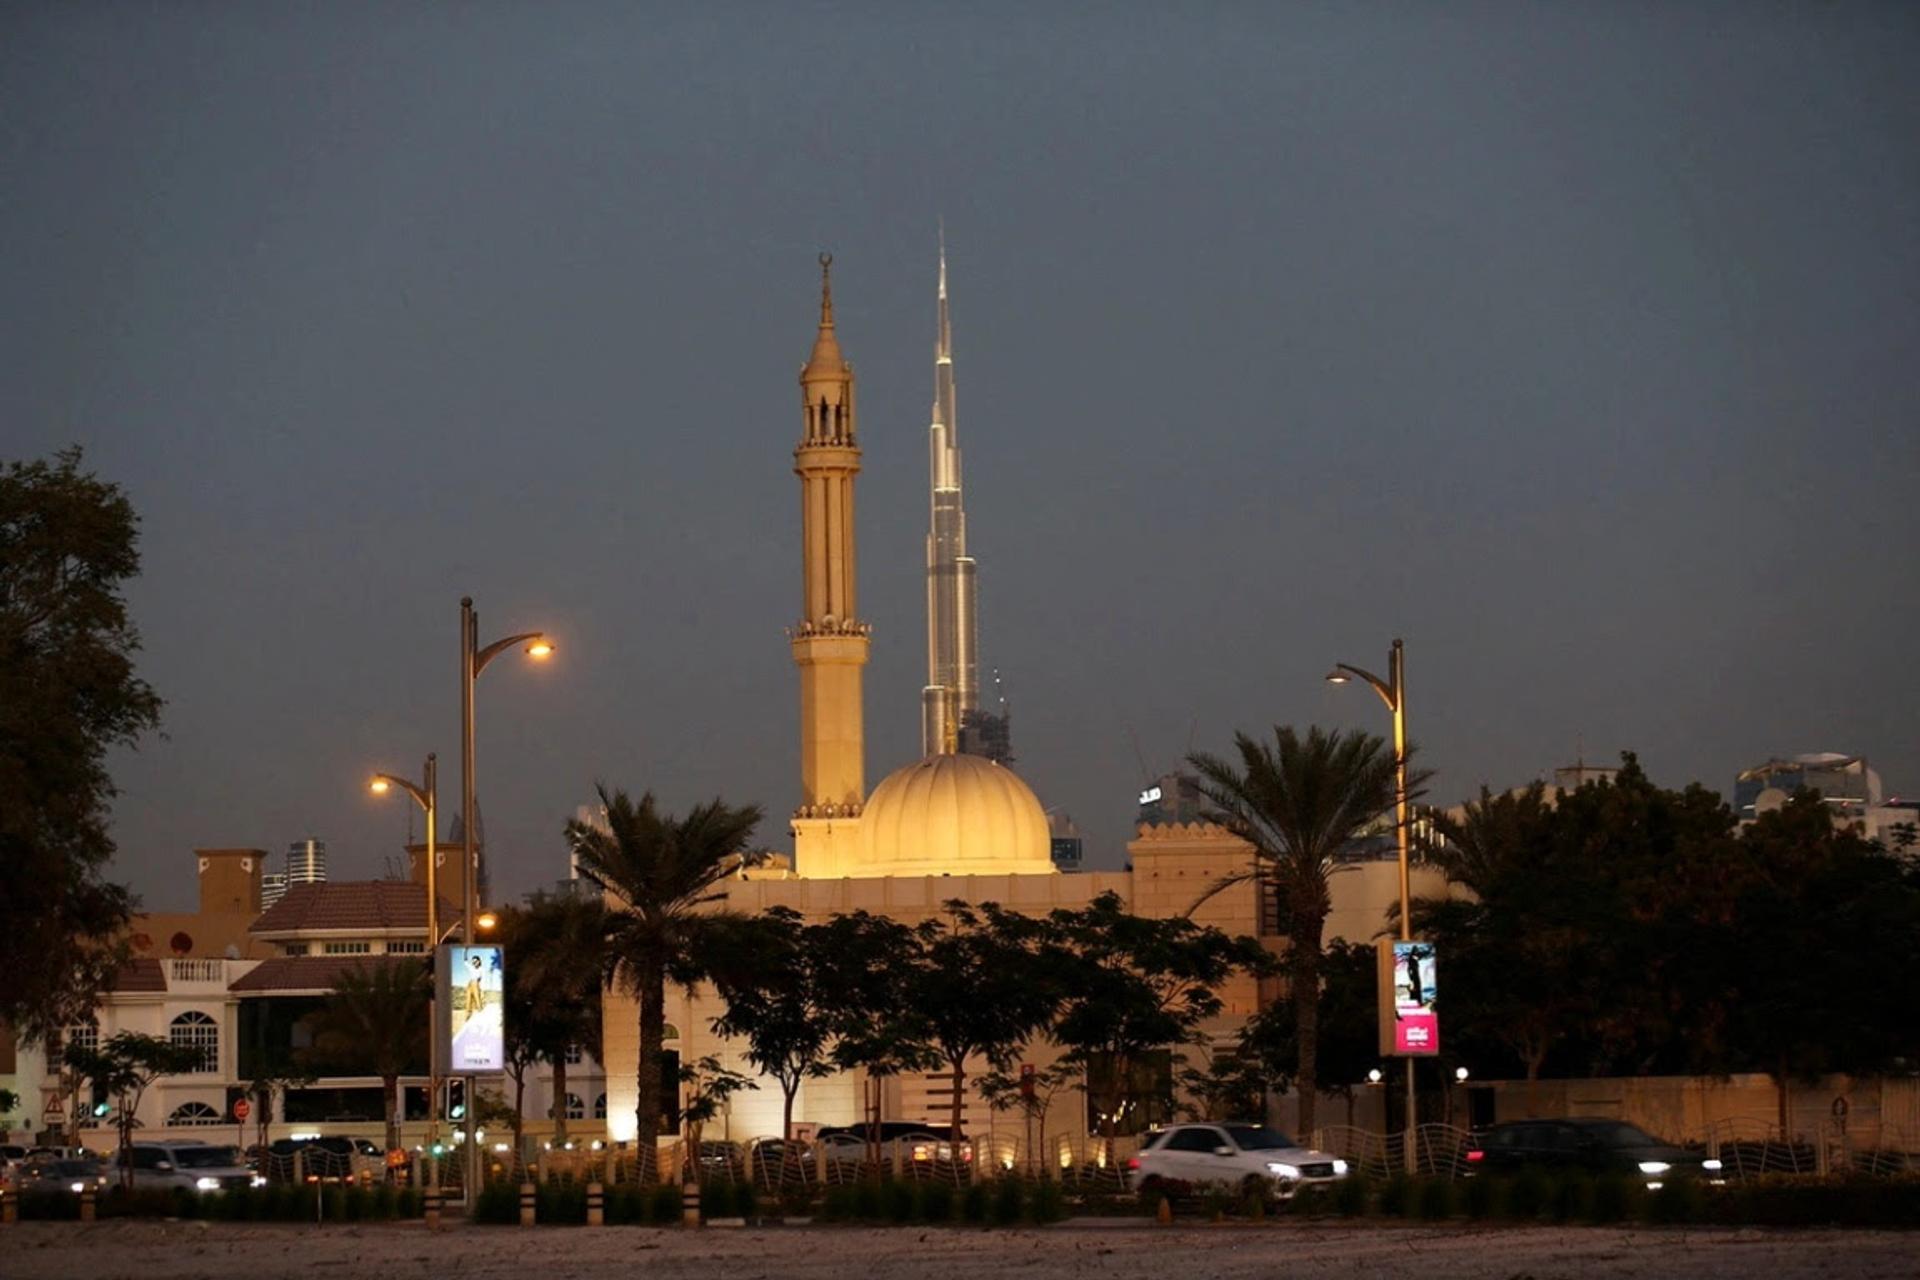 A mosque on the Jumeirah beach road in Dubai